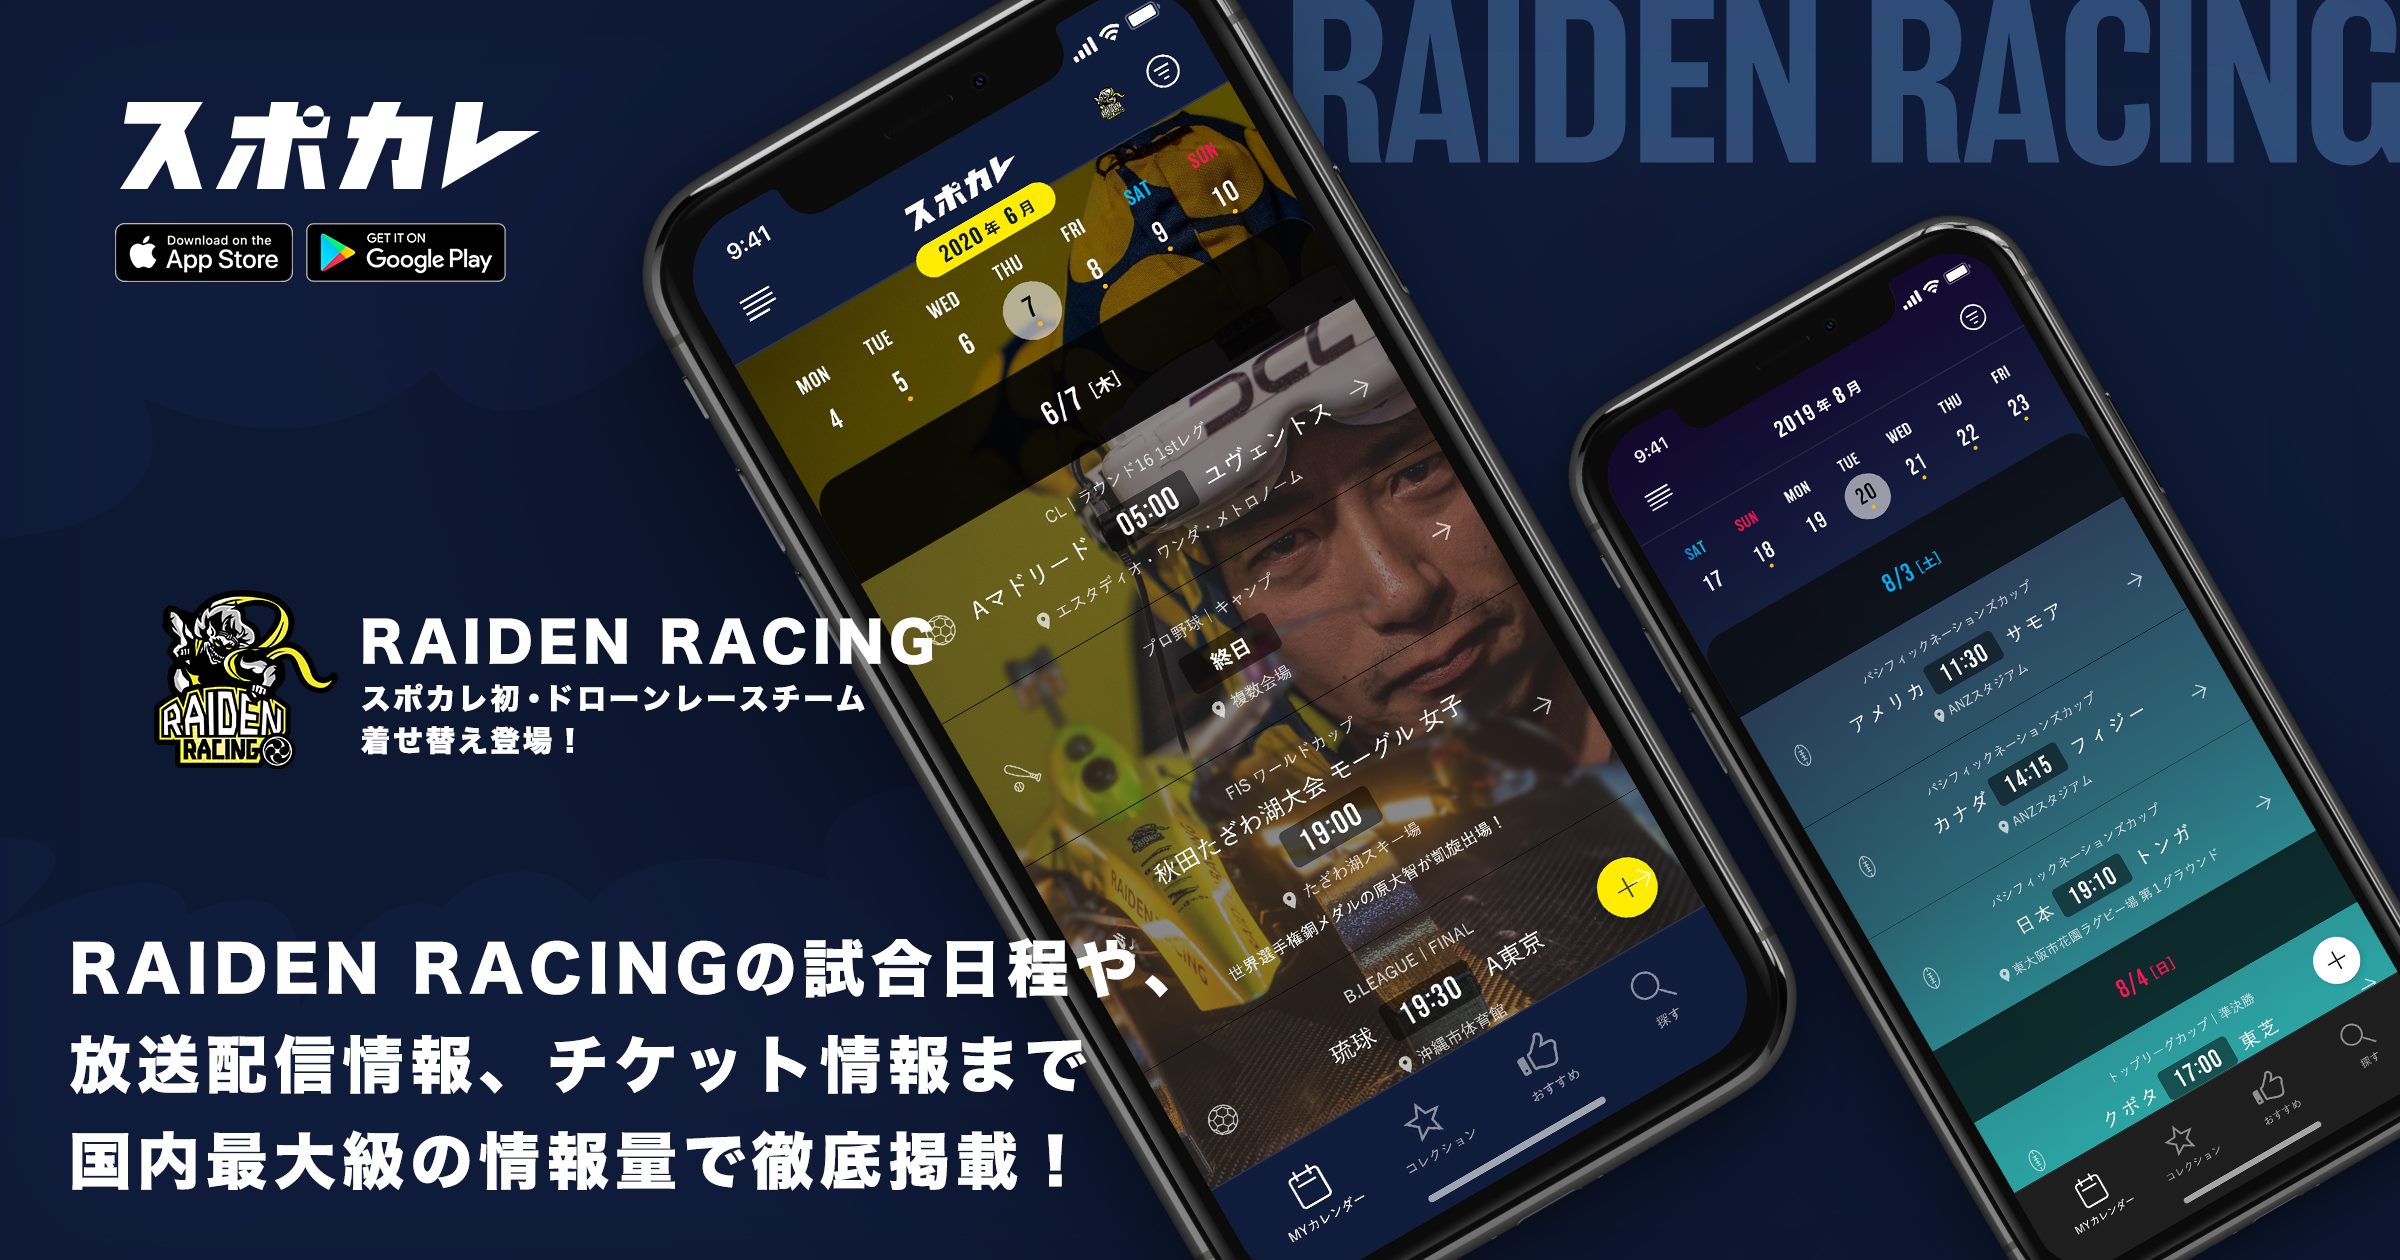 「RAIDEN RACING公式カレンダー」をスポーツ観戦情報アプリ「スポカレ」にて 配信を開始しました。